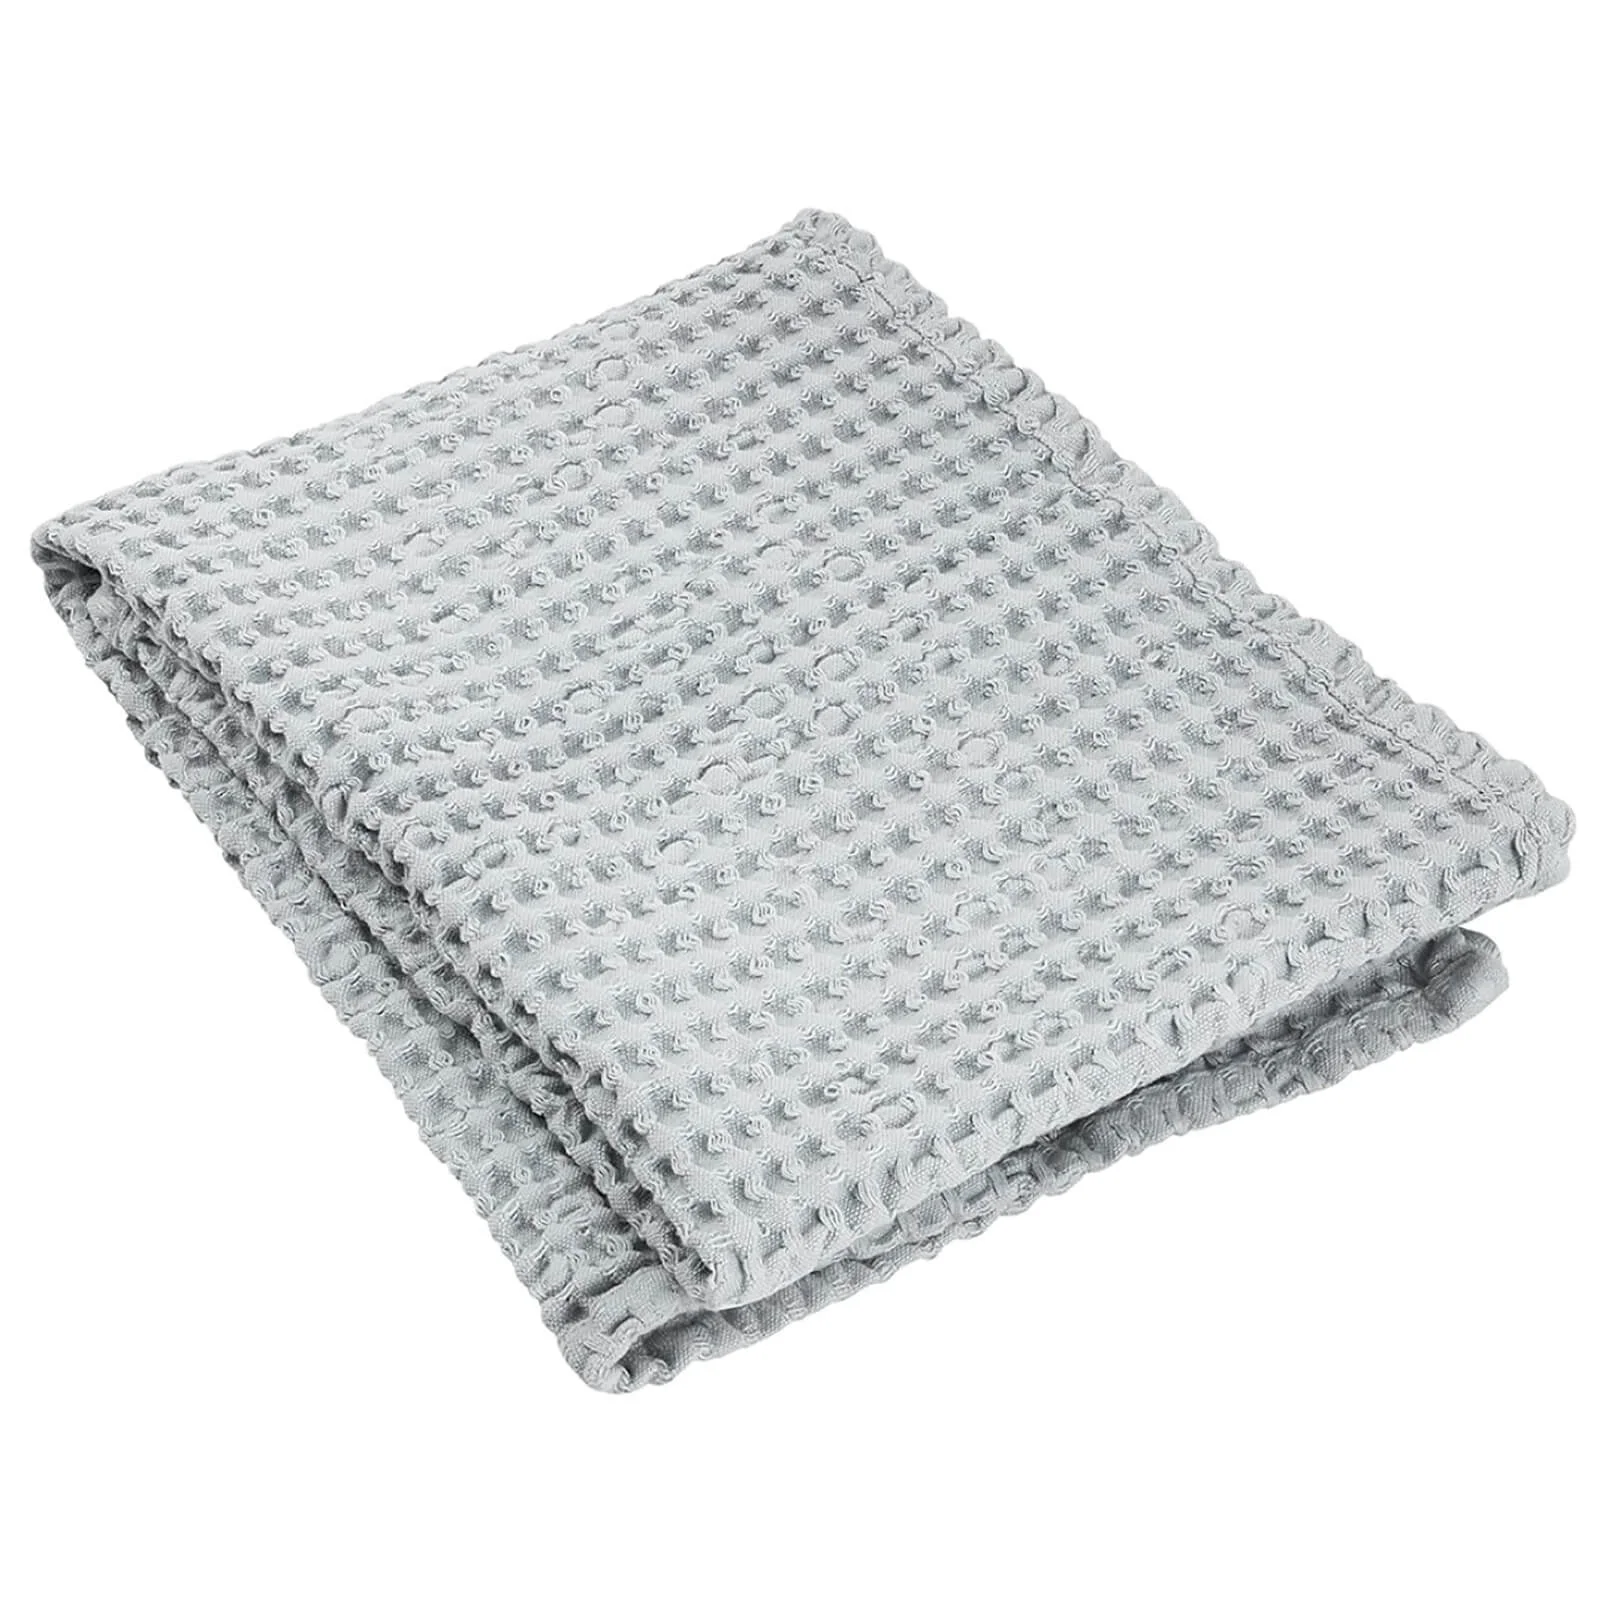 Blomus Caro Hand Towel - Micro Chip Image 1